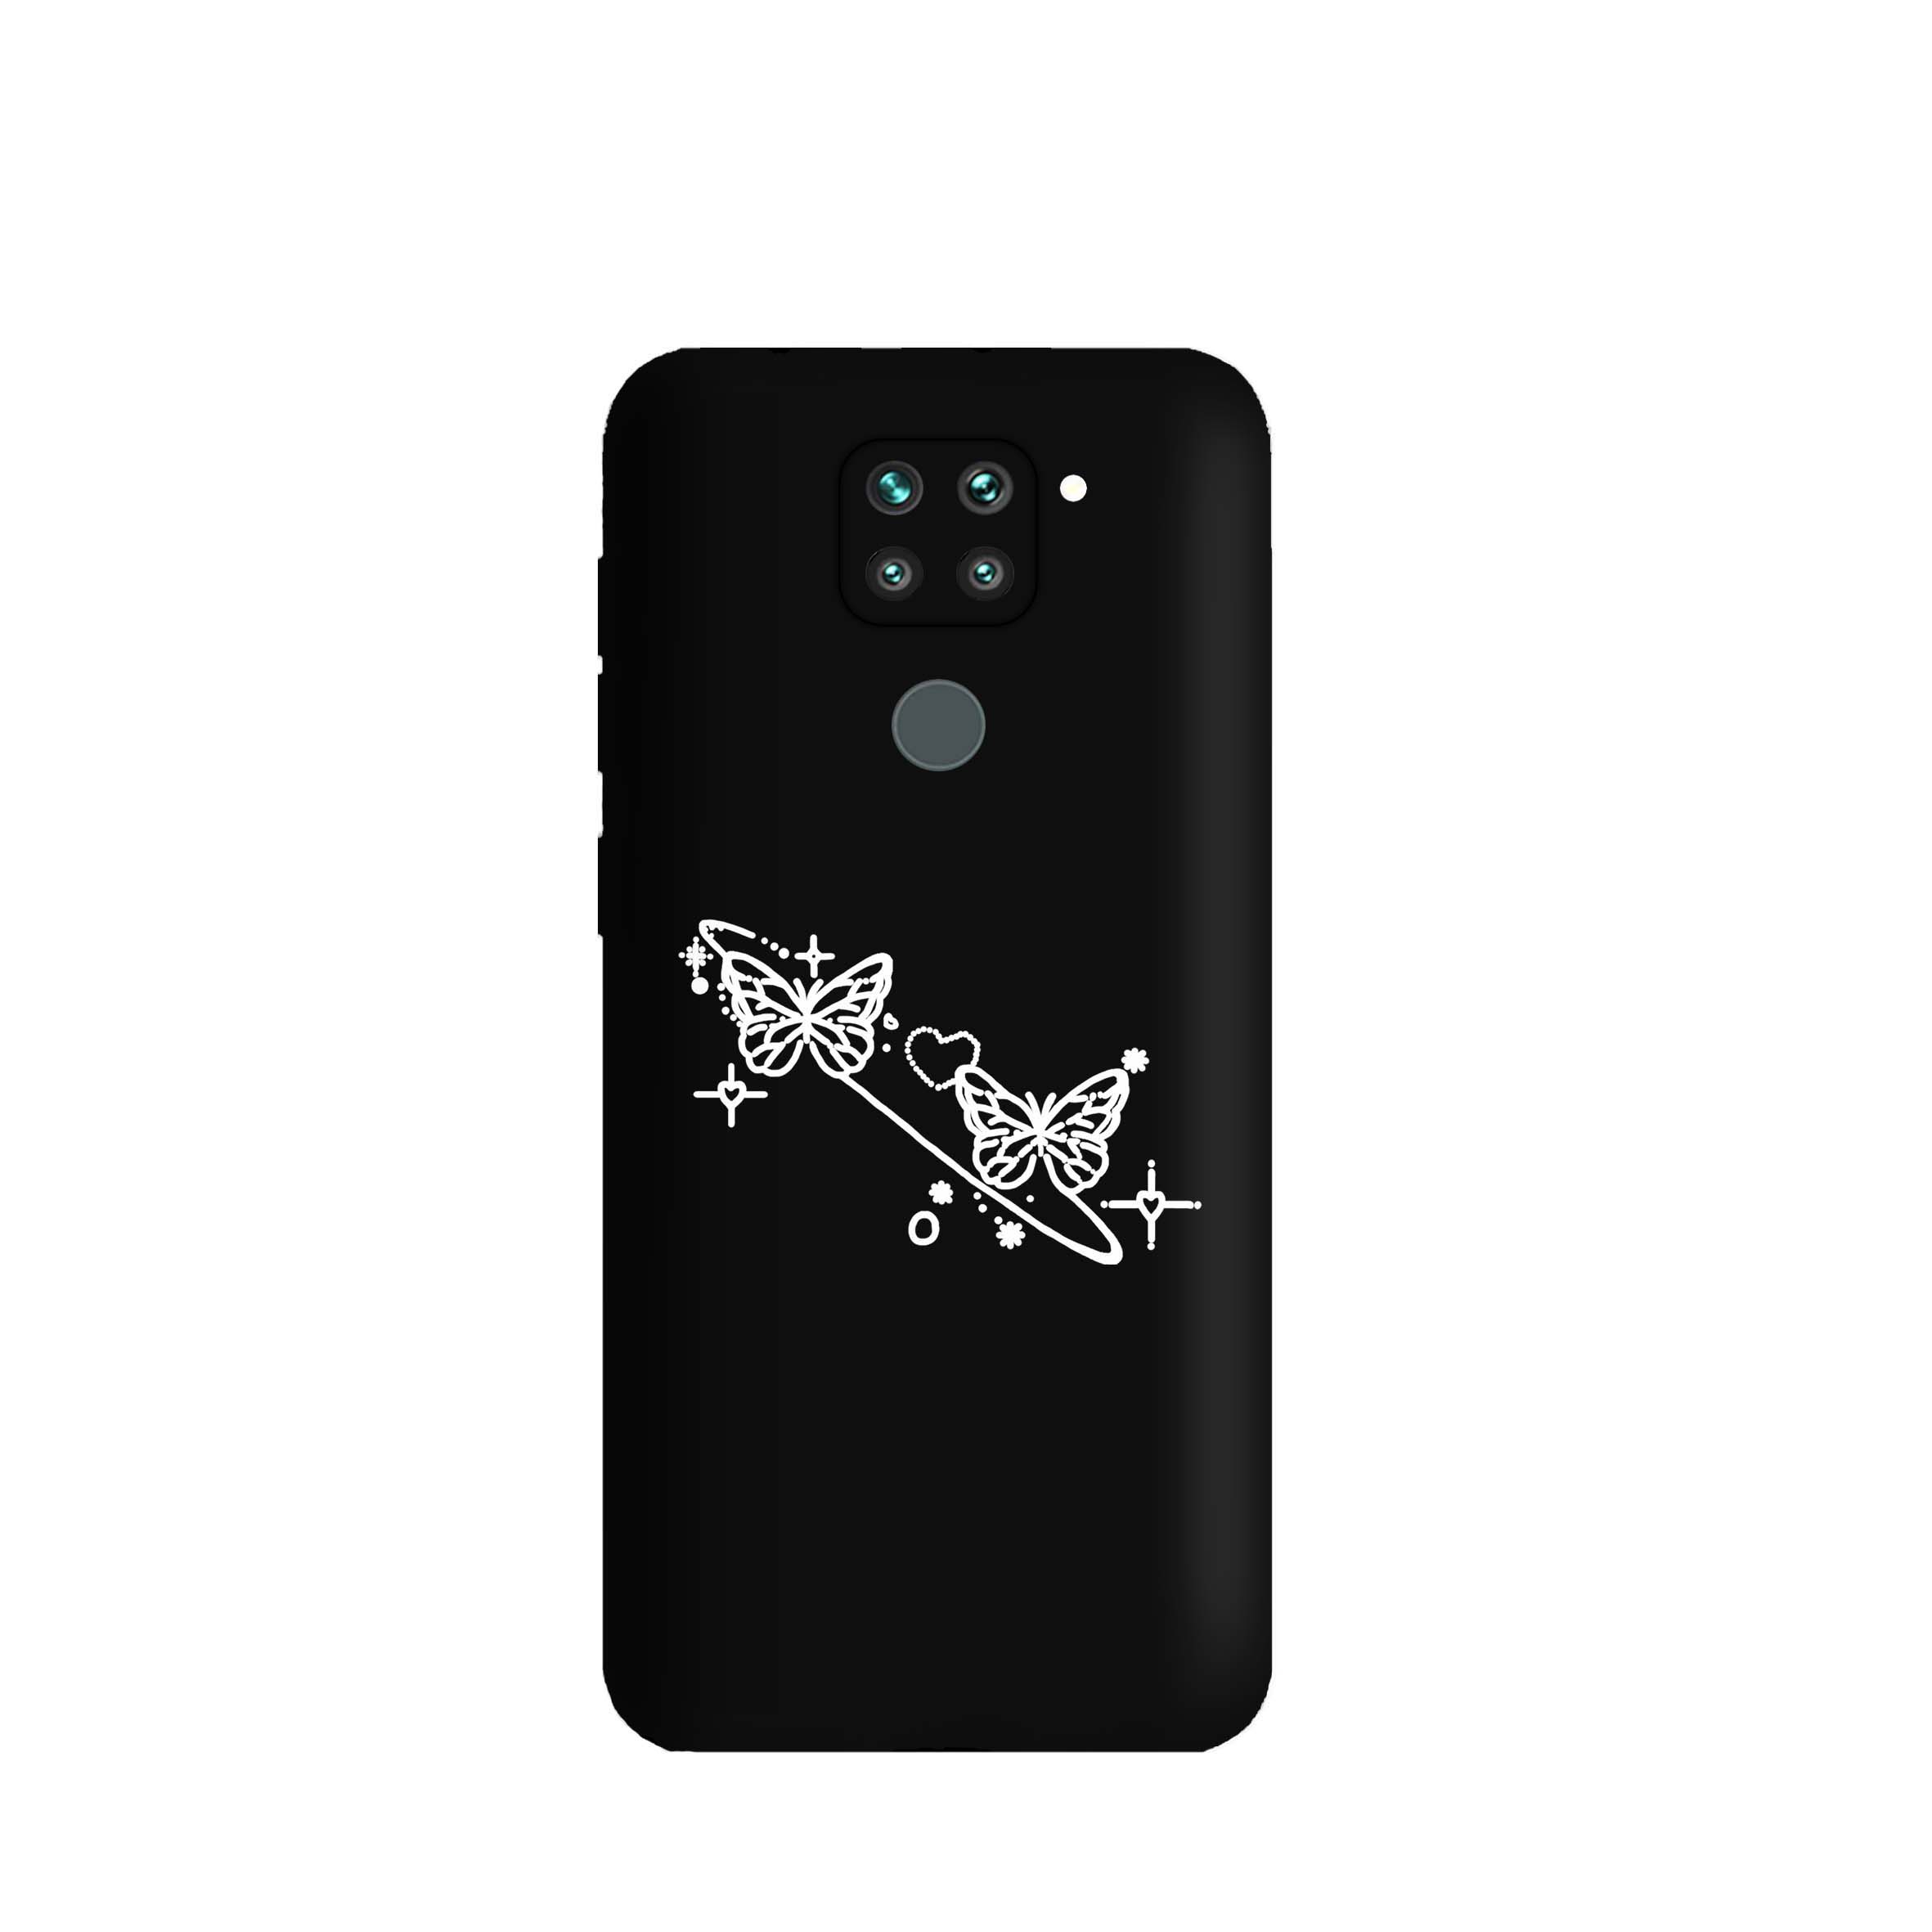 کاور قاب گارد طرح پروانه ای کد s9022 مناسب برای گوشی موبایل شیائومی Redmi Note 9